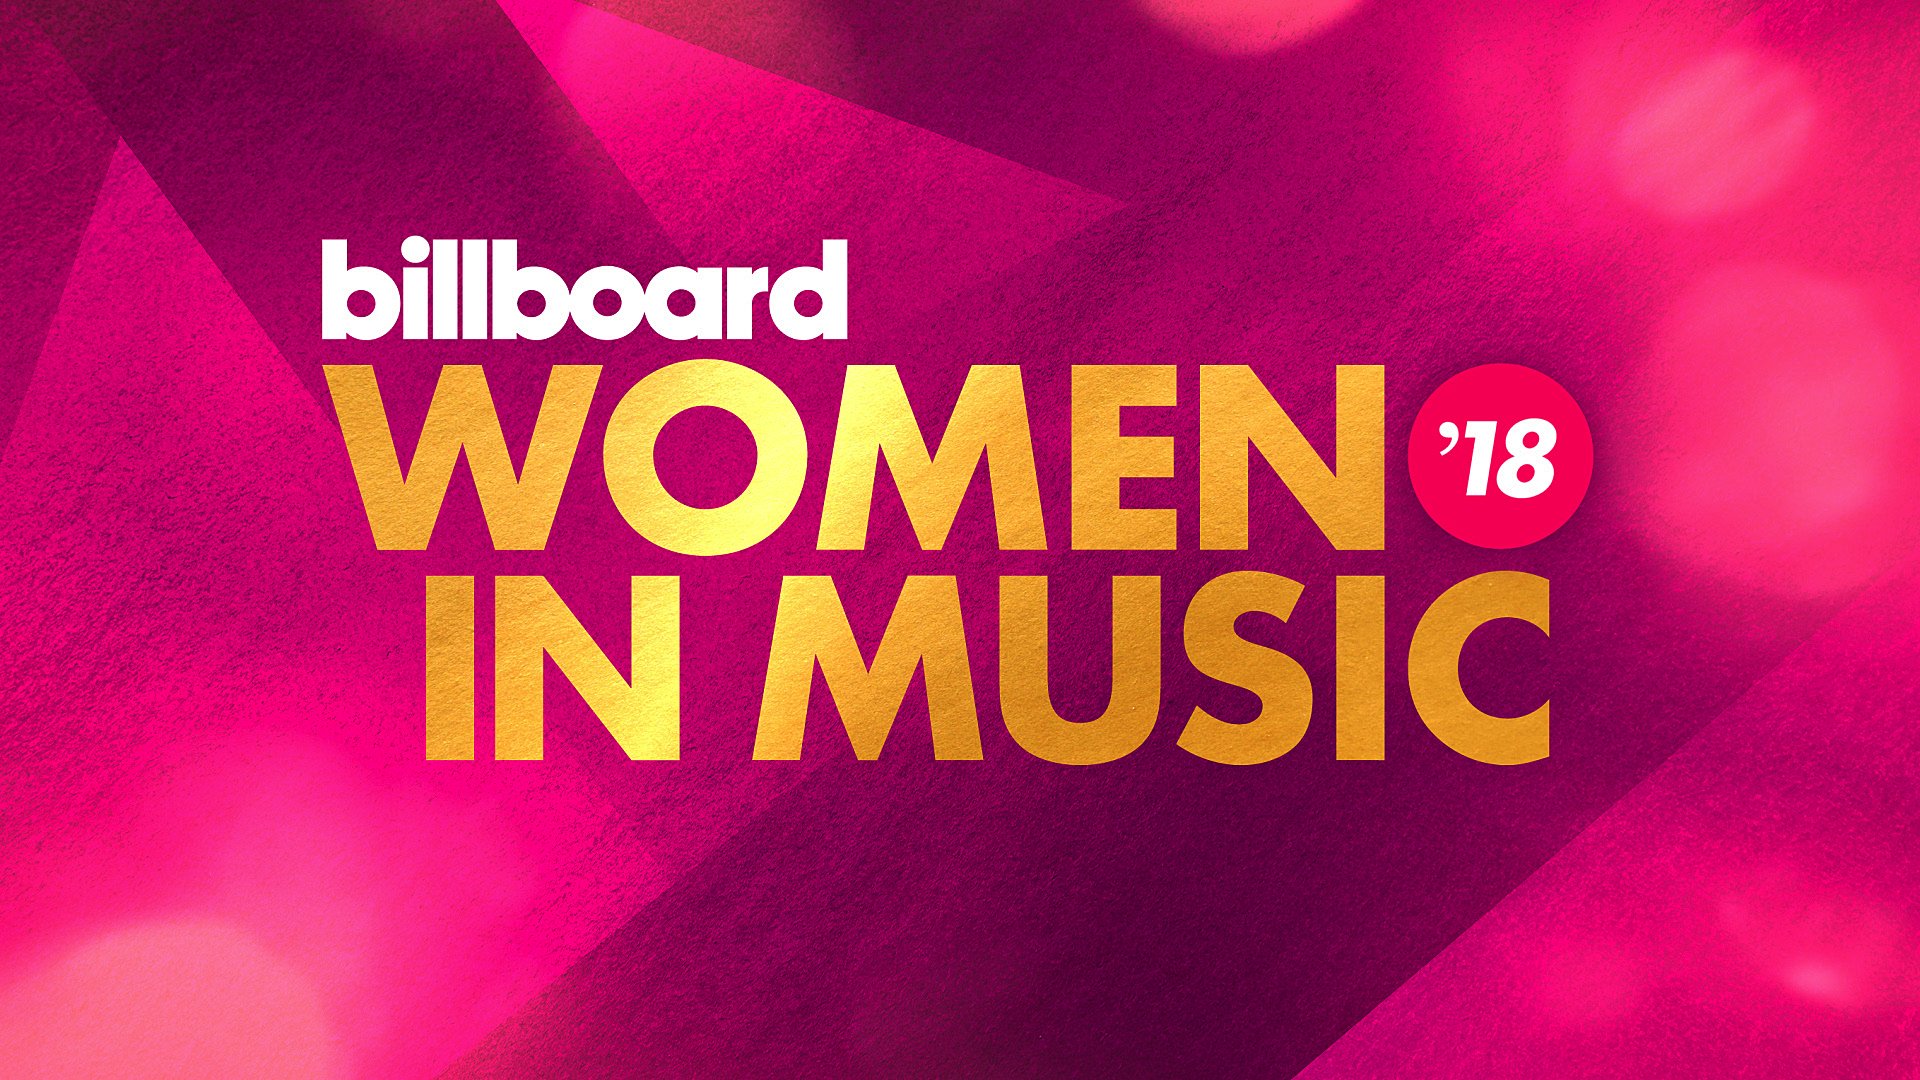 03_Billboard Women In Music 2018.jpg